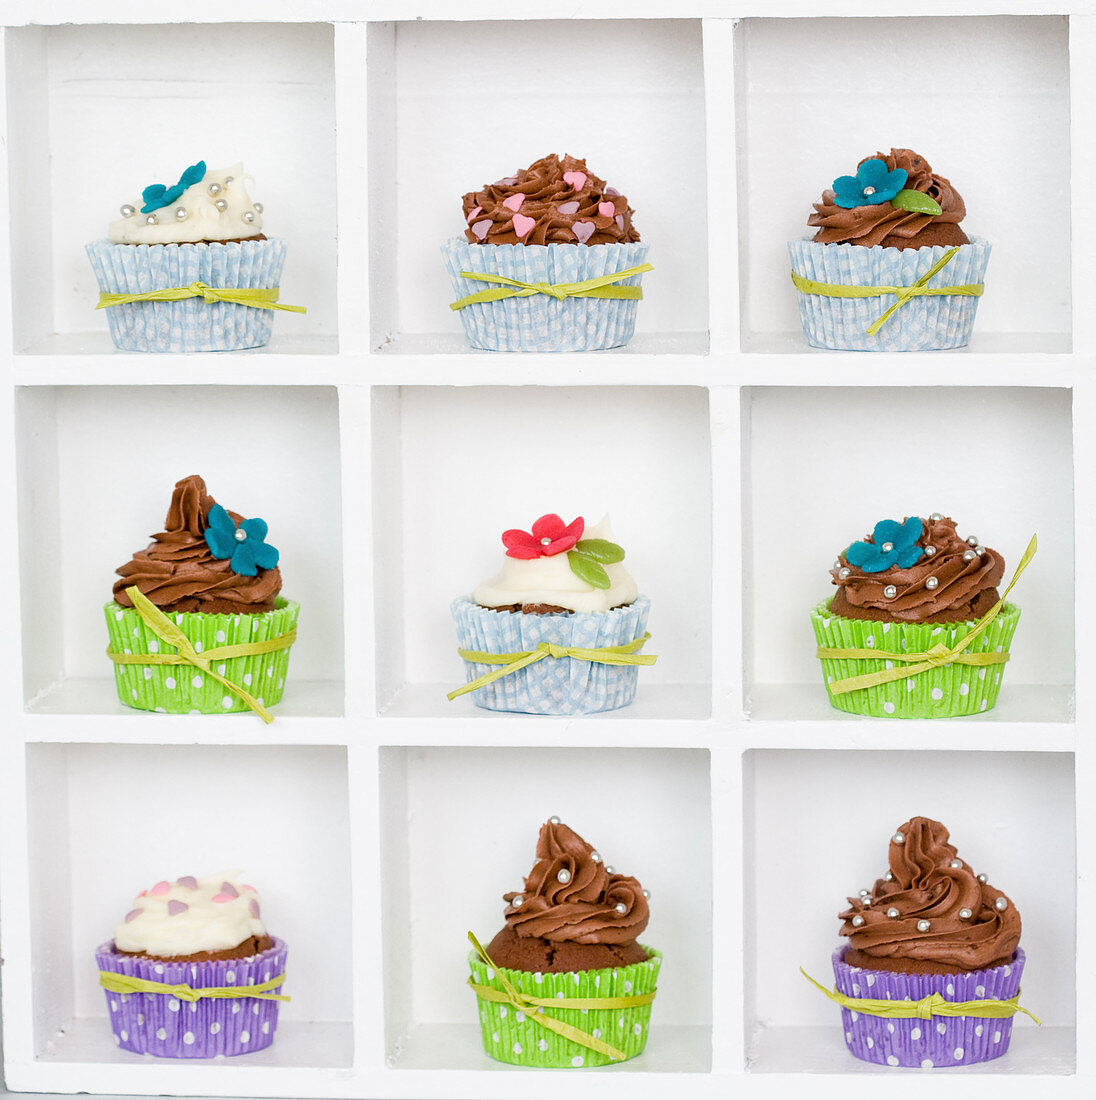 Cupcakes mit bunten Manschetten und Zuckerblumen im Setzkasten